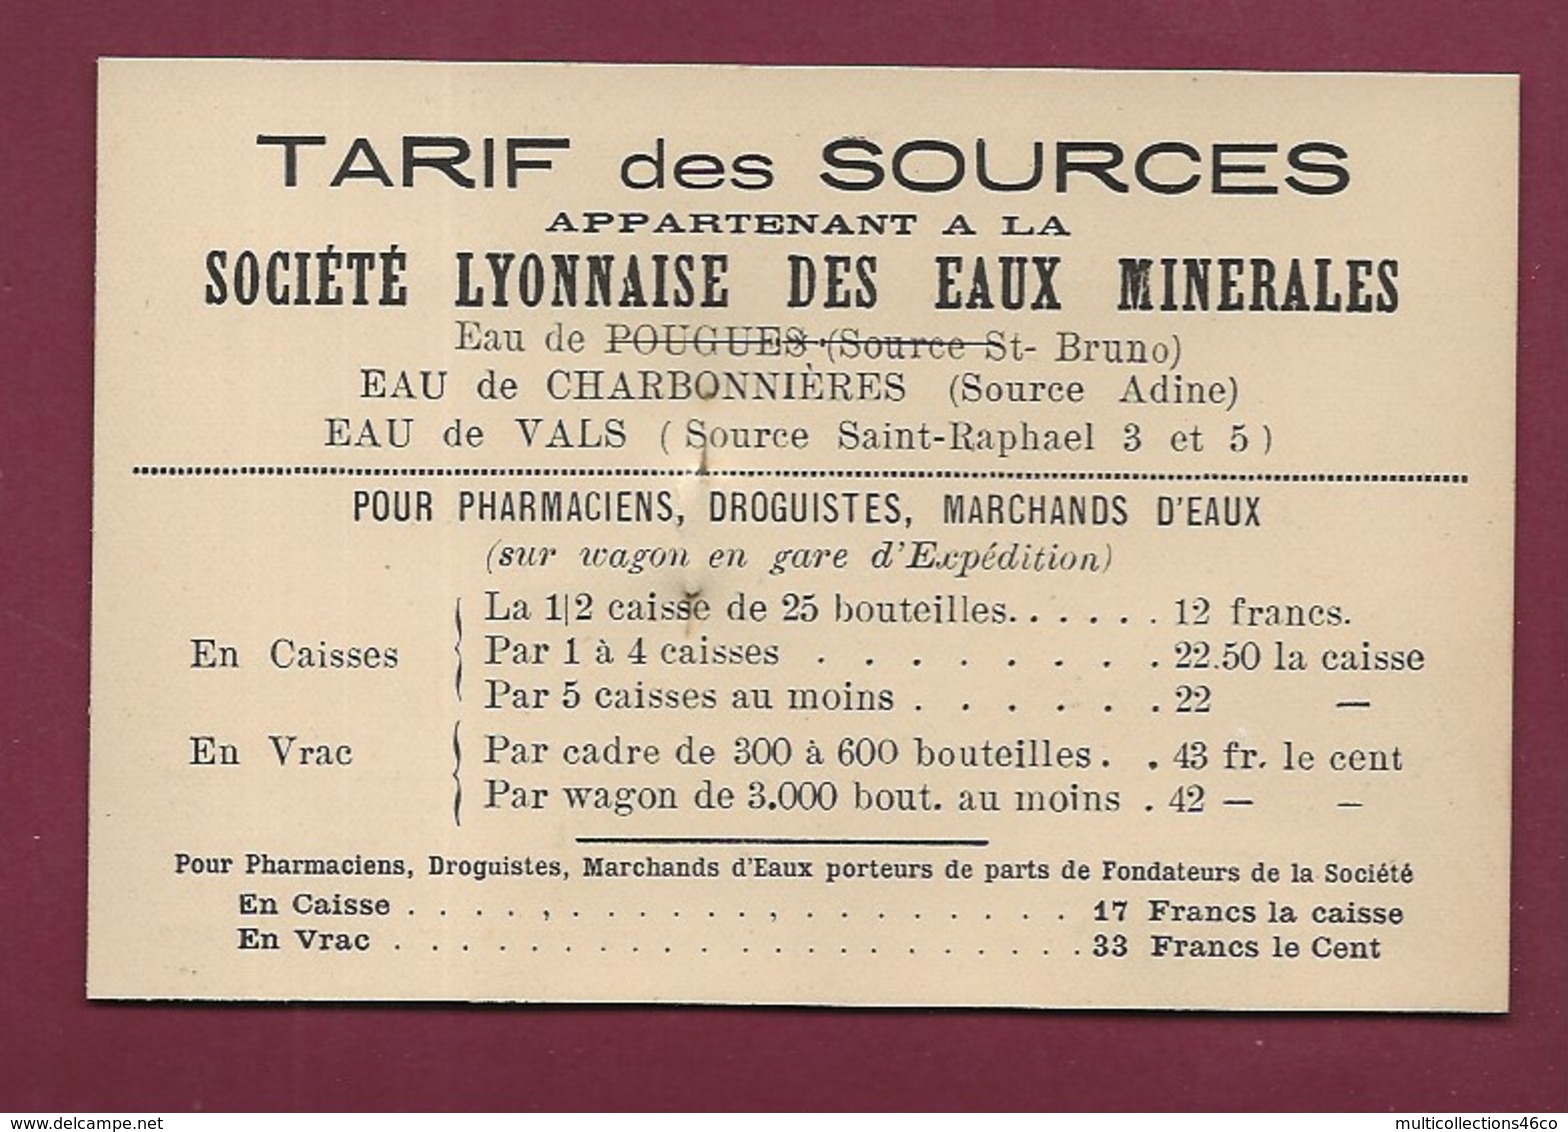 180720 - CARTE DE VISITE Représentant - EAUX MINERALES Dr LEON JACQUET & Cie 269 Rue Boileau Tarif Source - Lyon 6